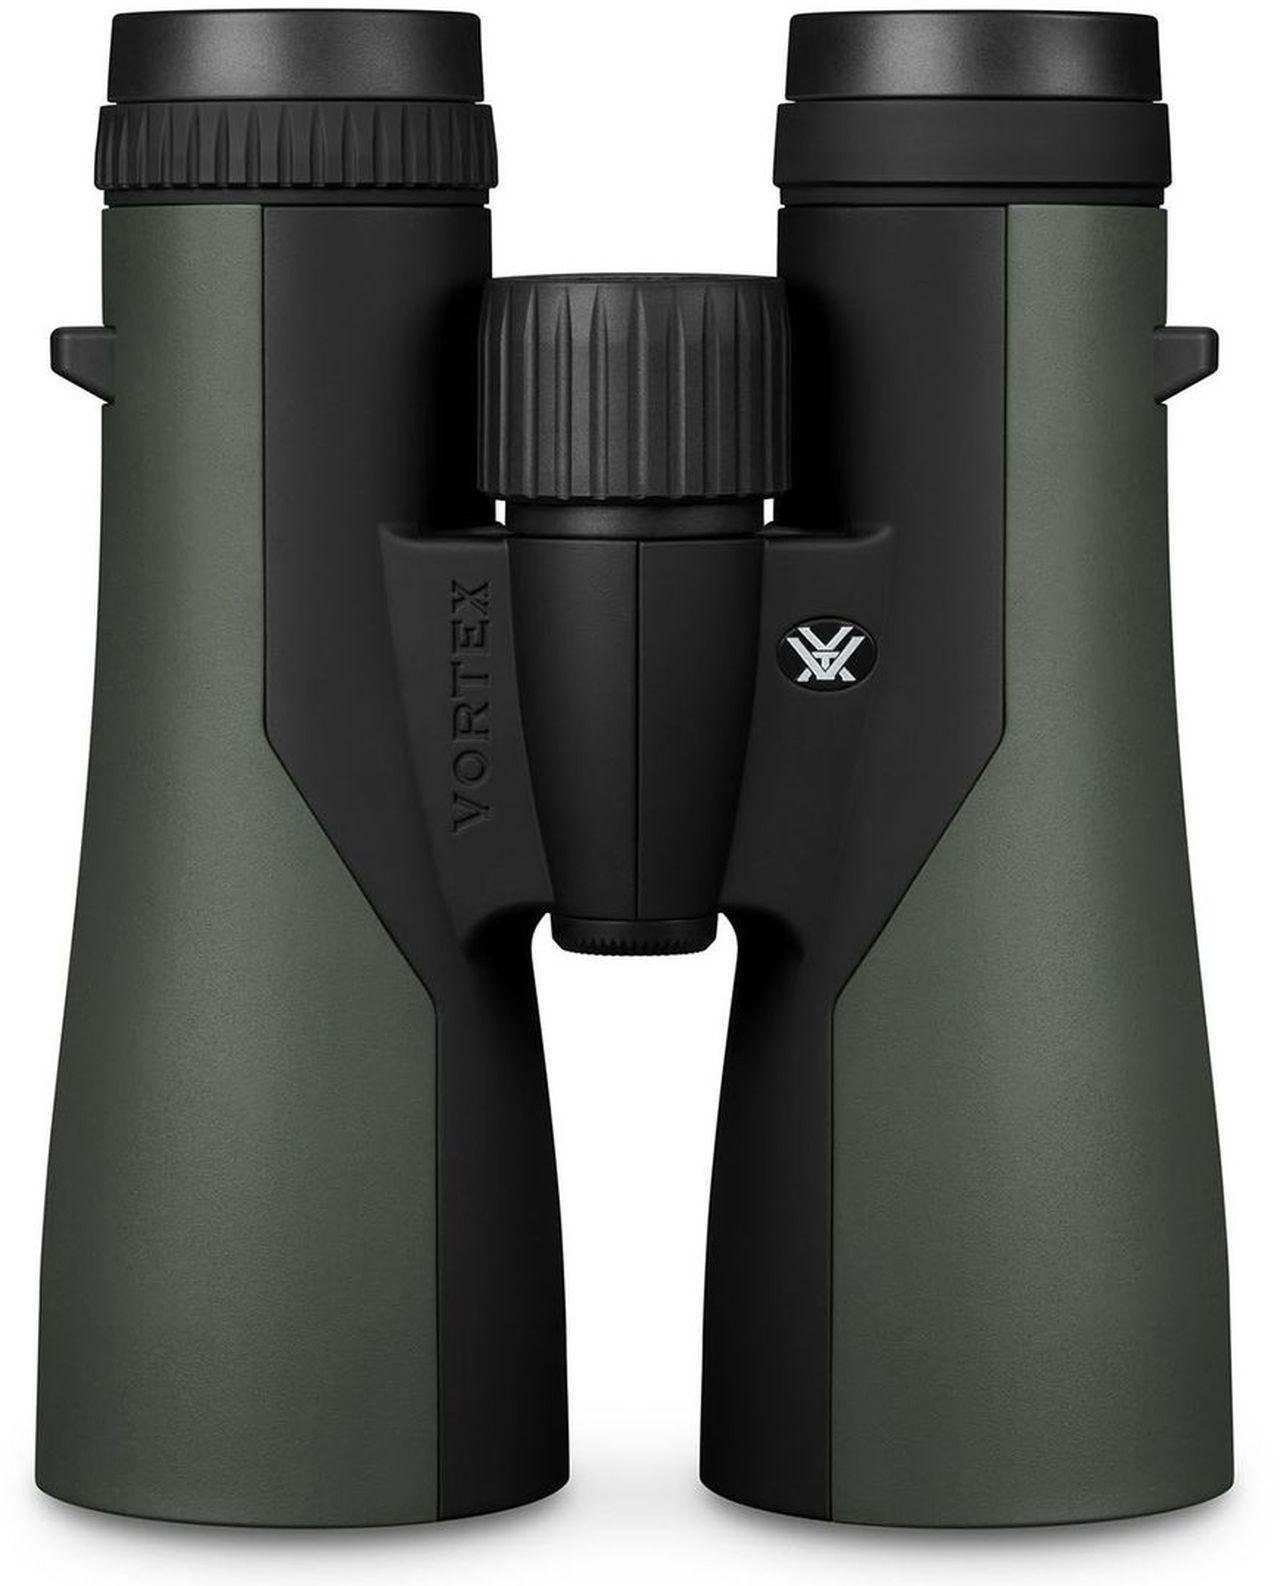 VORTEX Crossfire Objektiv NEW HD 12x50